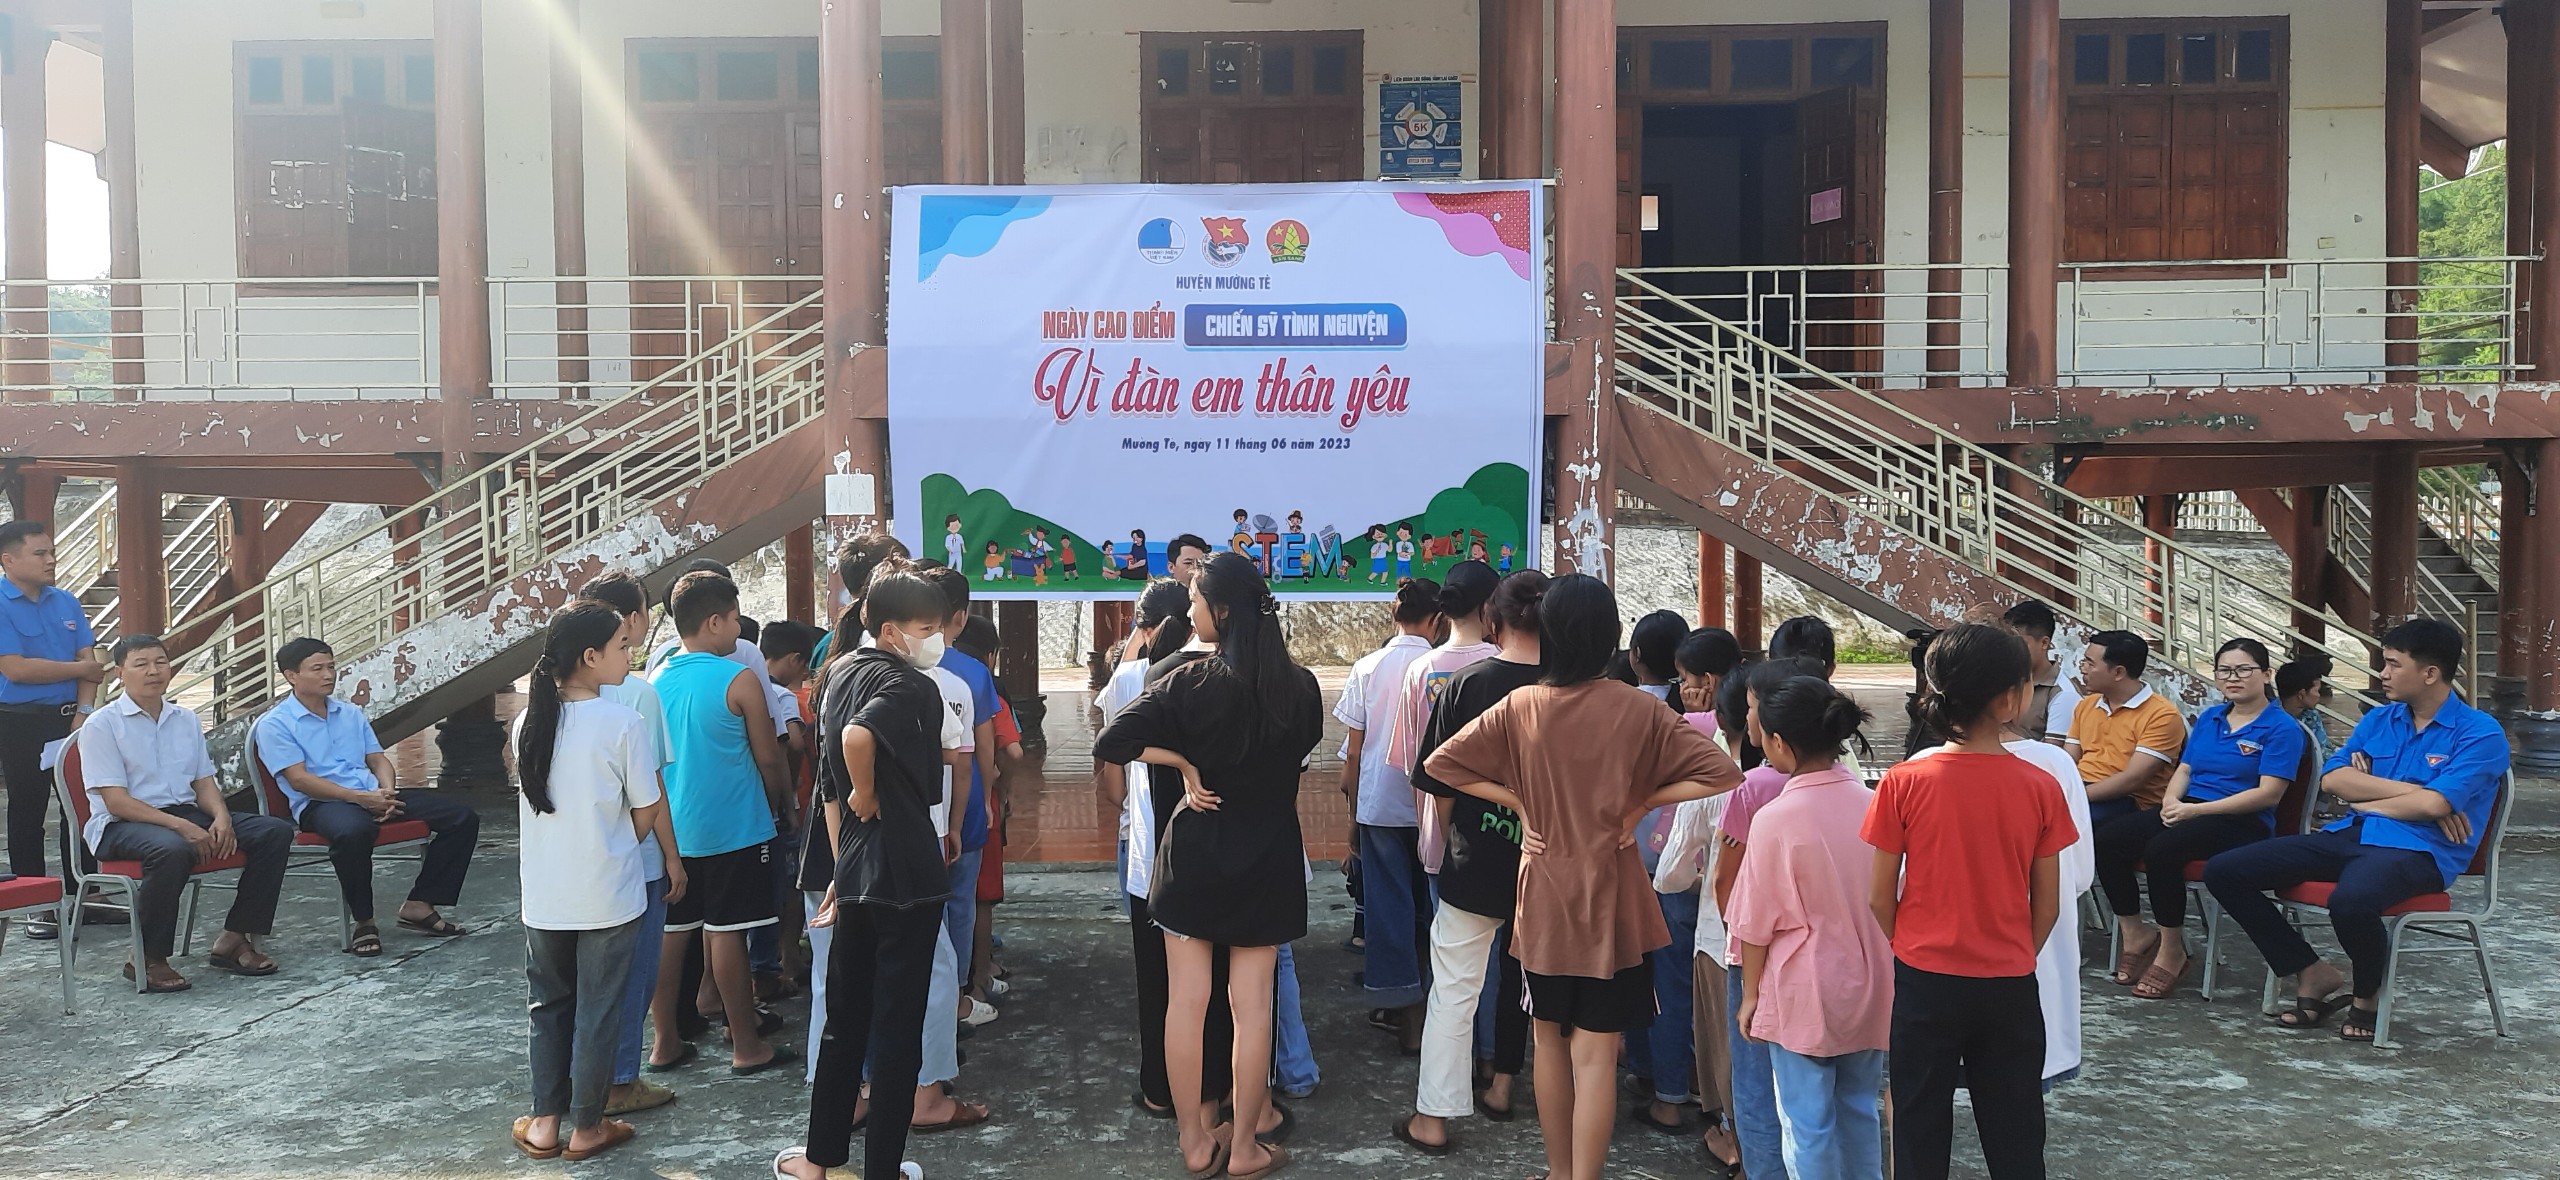 Nhiều hoạt động ý nghĩa ngày cao điểm tình nguyện vì đàn em thân yêu của tuổi trẻ huyện Mường Tè